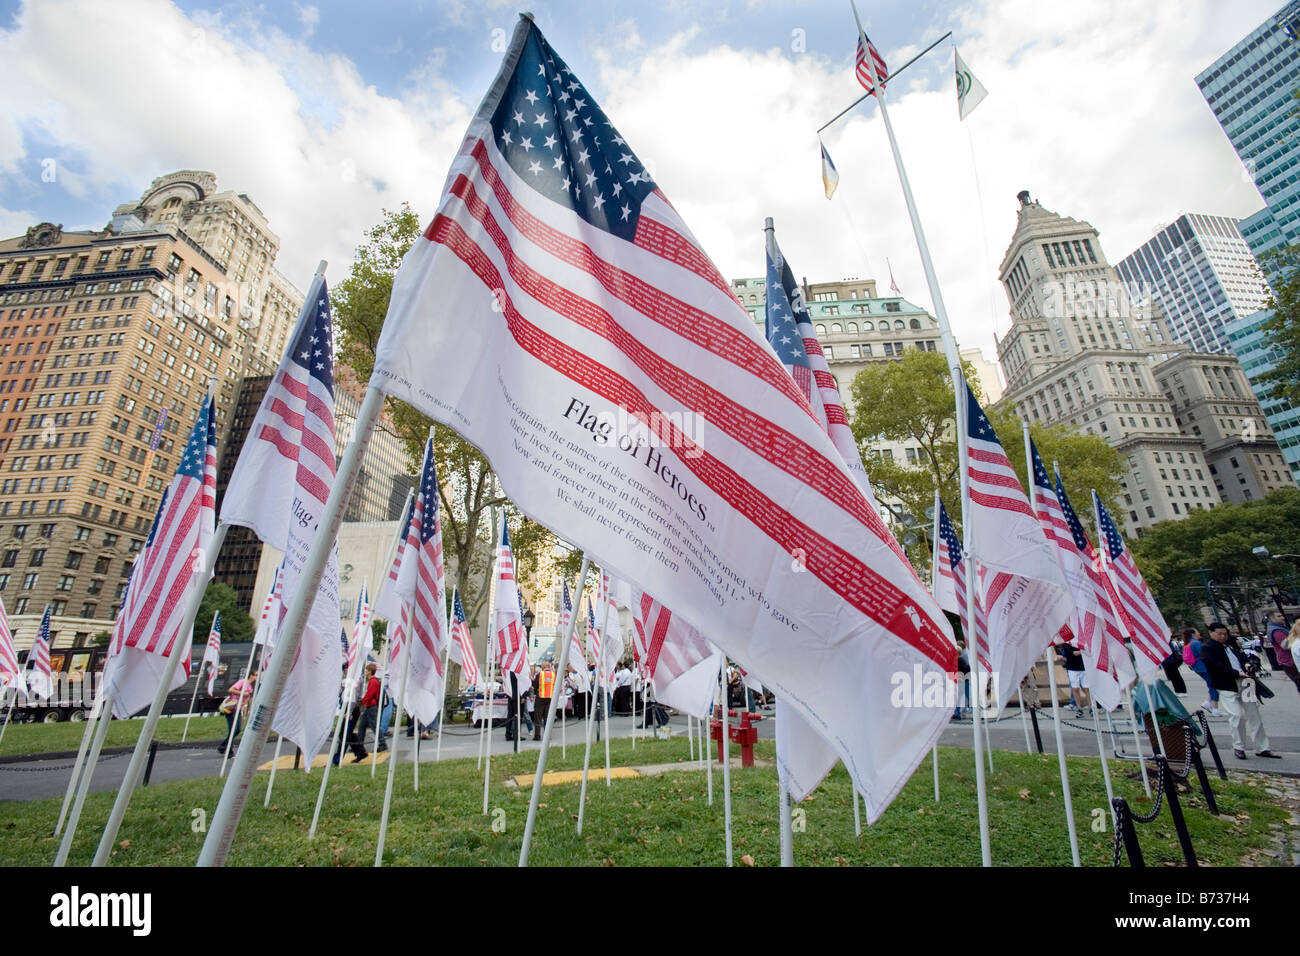 Bandiera degli eroi volare in Lower Manhattan per l anniversario del 9 11 Terrore attentato alle Torri Gemelle. Foto Stock